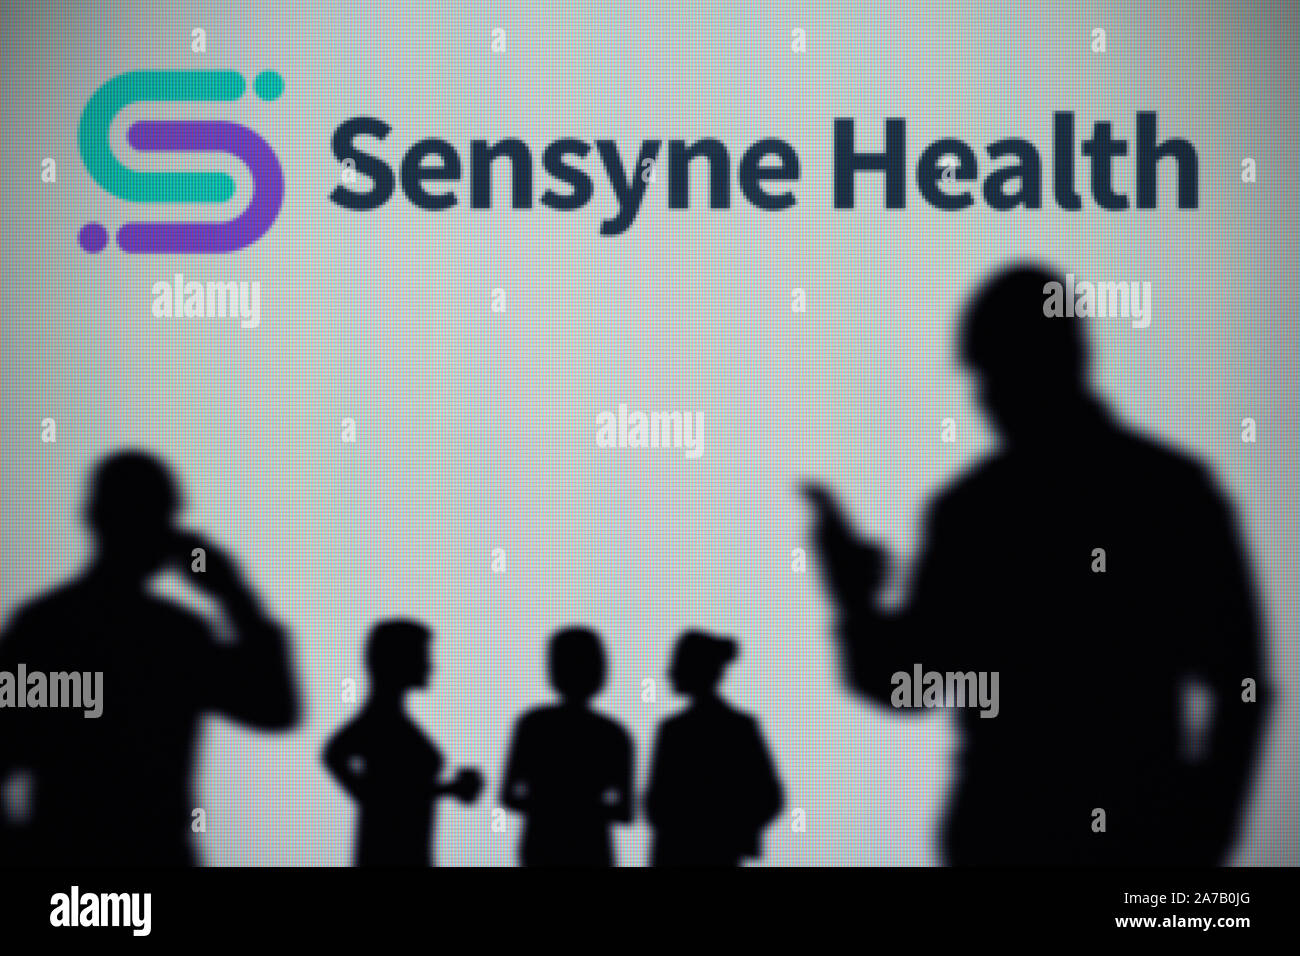 La salute Sensyne logo è visibile su uno schermo a LED in background mentre si profila una persona utilizza uno smartphone (solo uso editoriale) Foto Stock